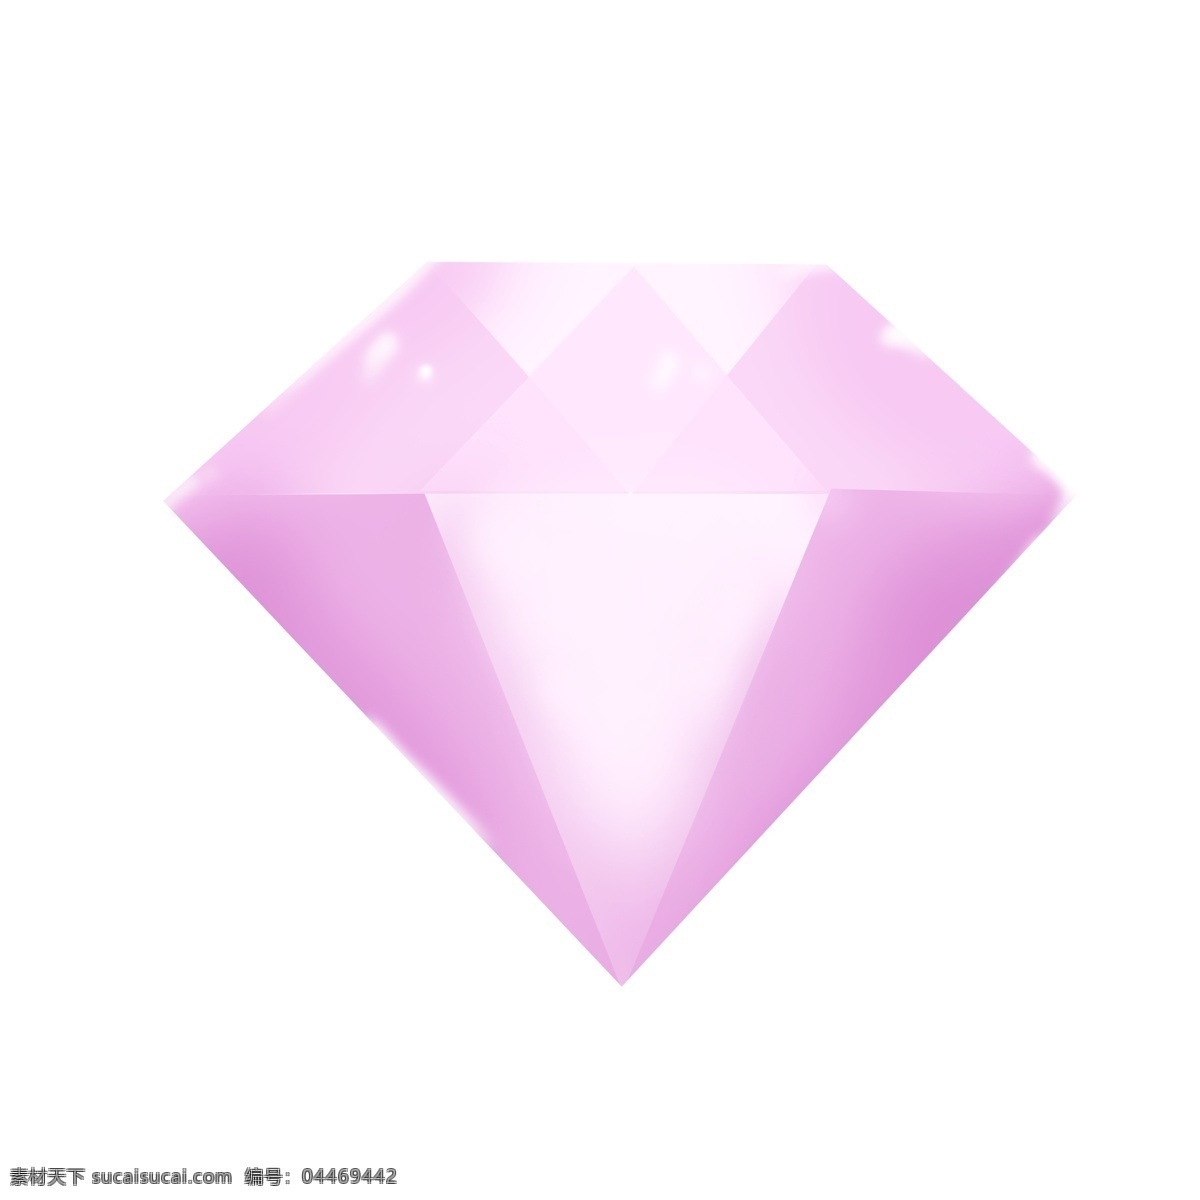 卡通 创意 粉色 钻石 宝石 水晶 水钻 珠宝 锆石 饰品 粉色钻石 几何体 水晶石 水晶钻 插画